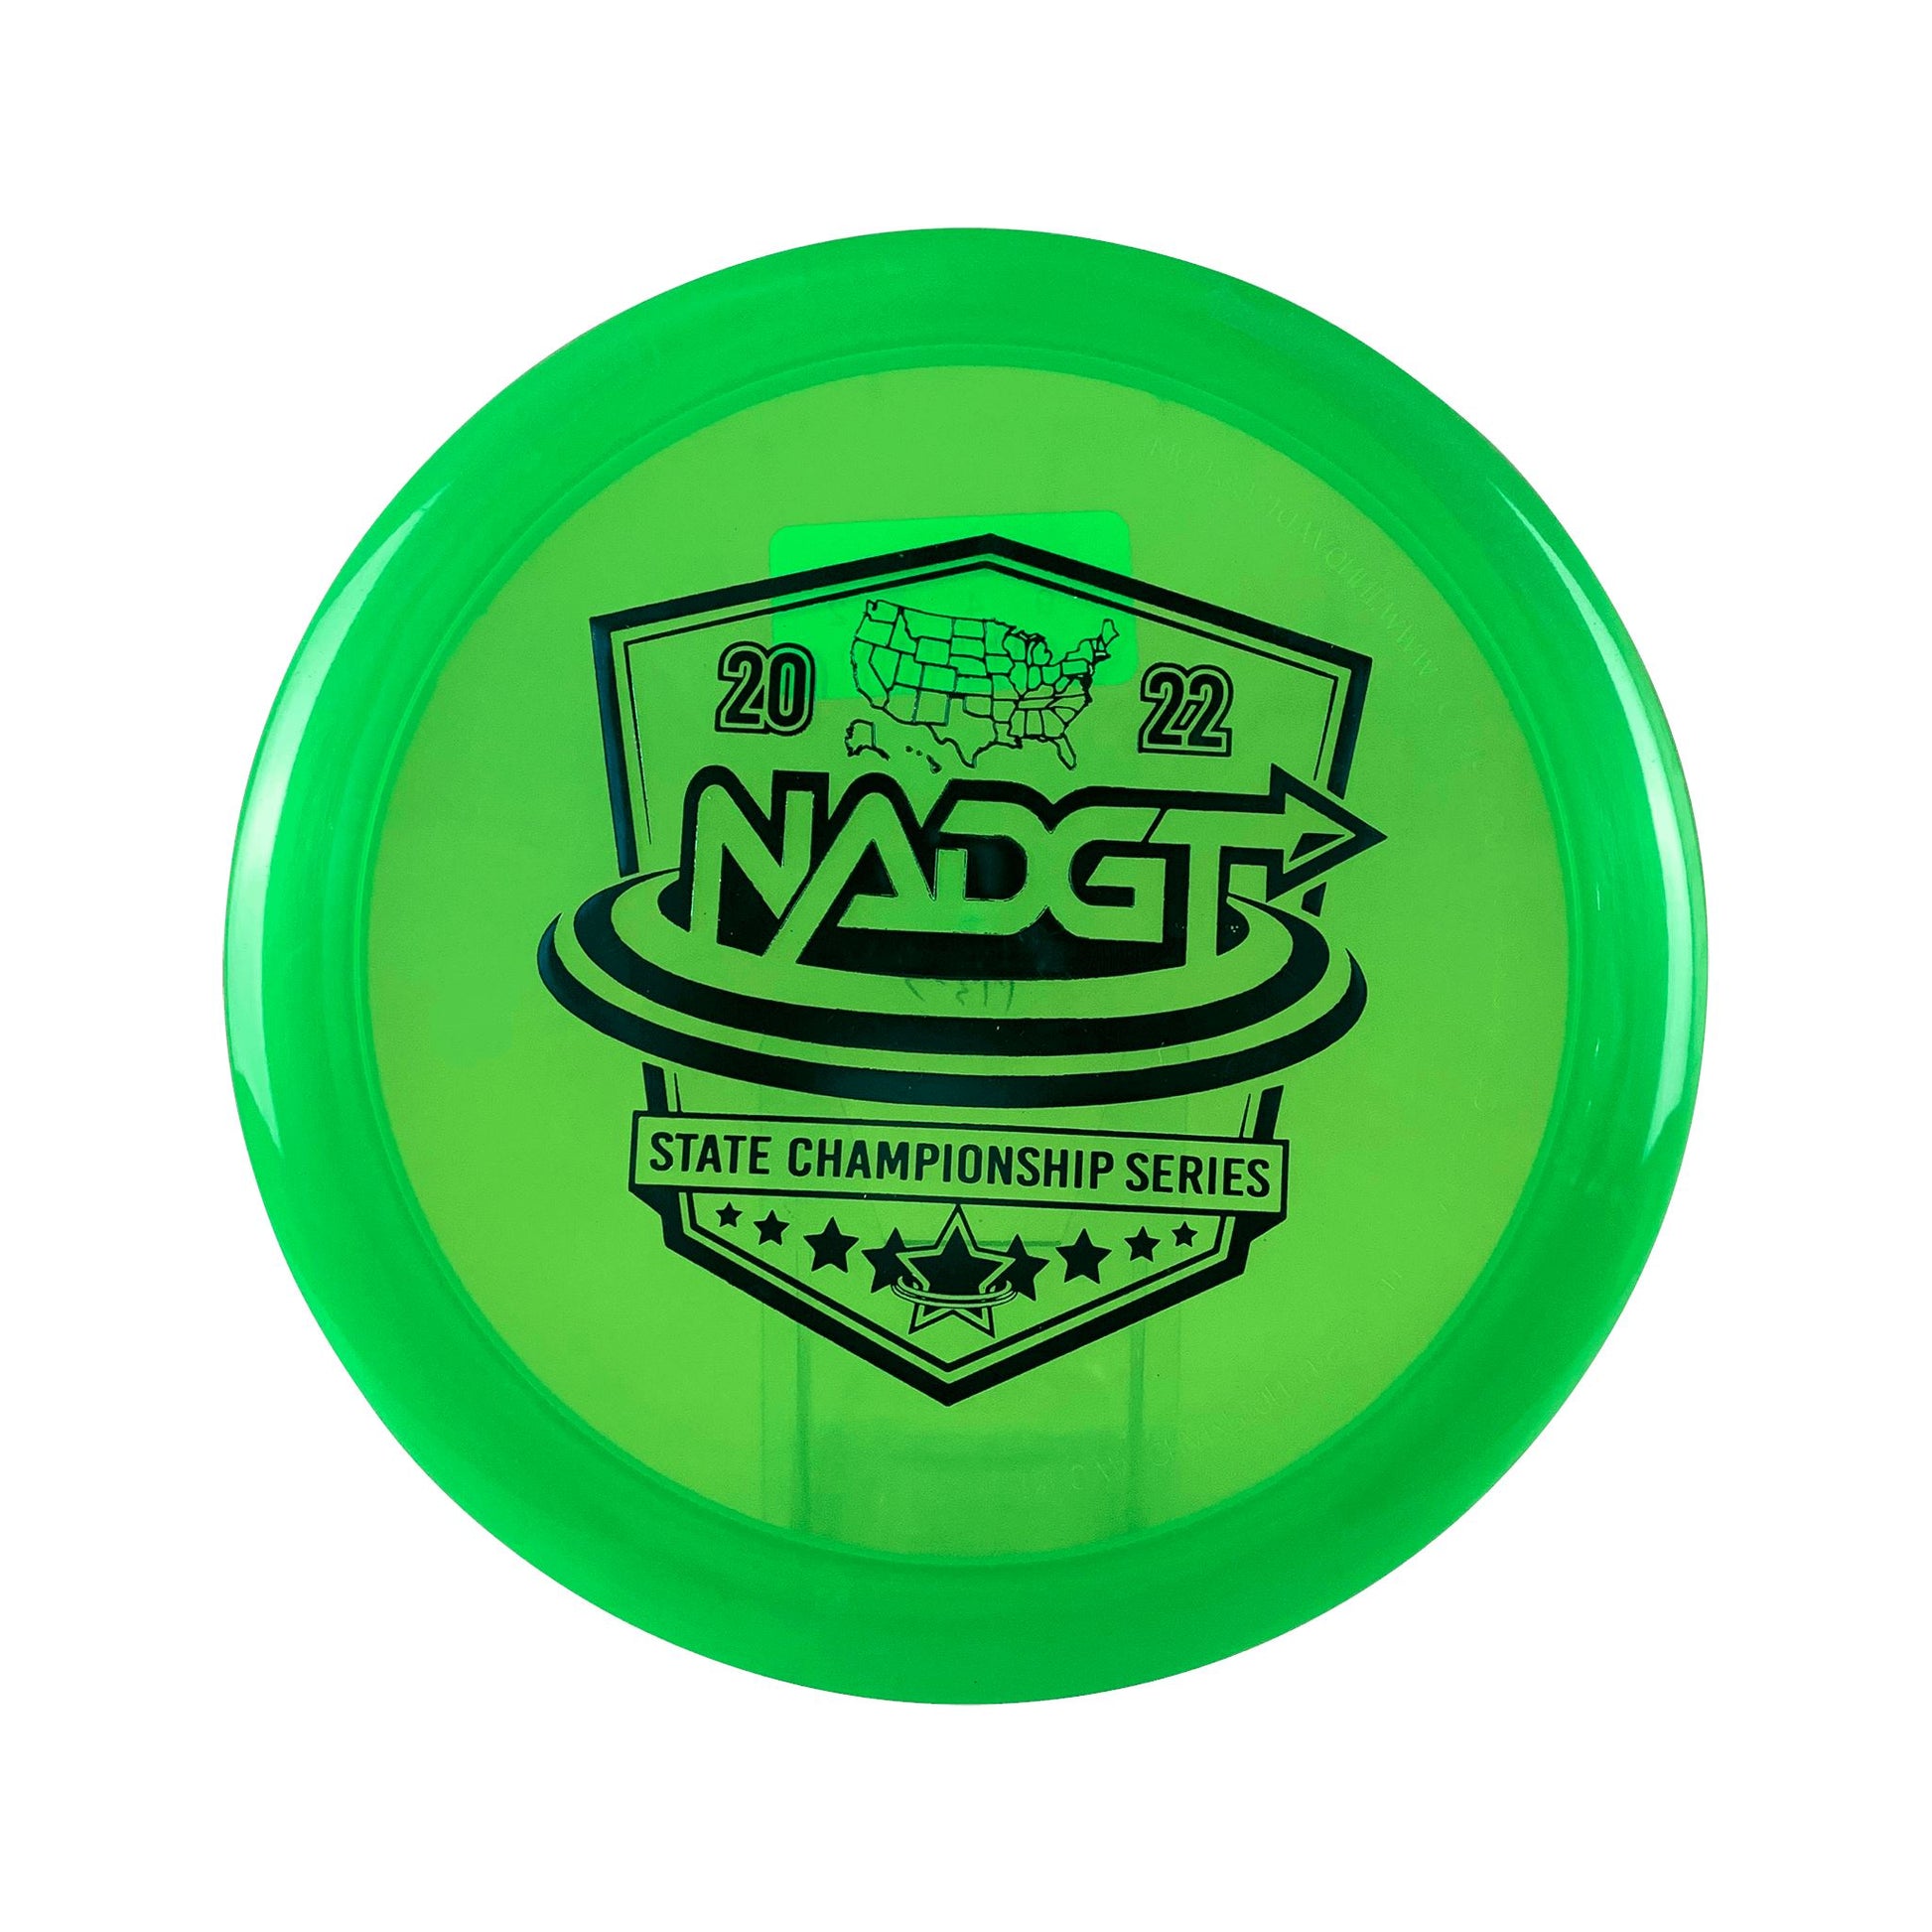 Champion Destroyer - NADGT State Series 2022 Disc Innova green 167 